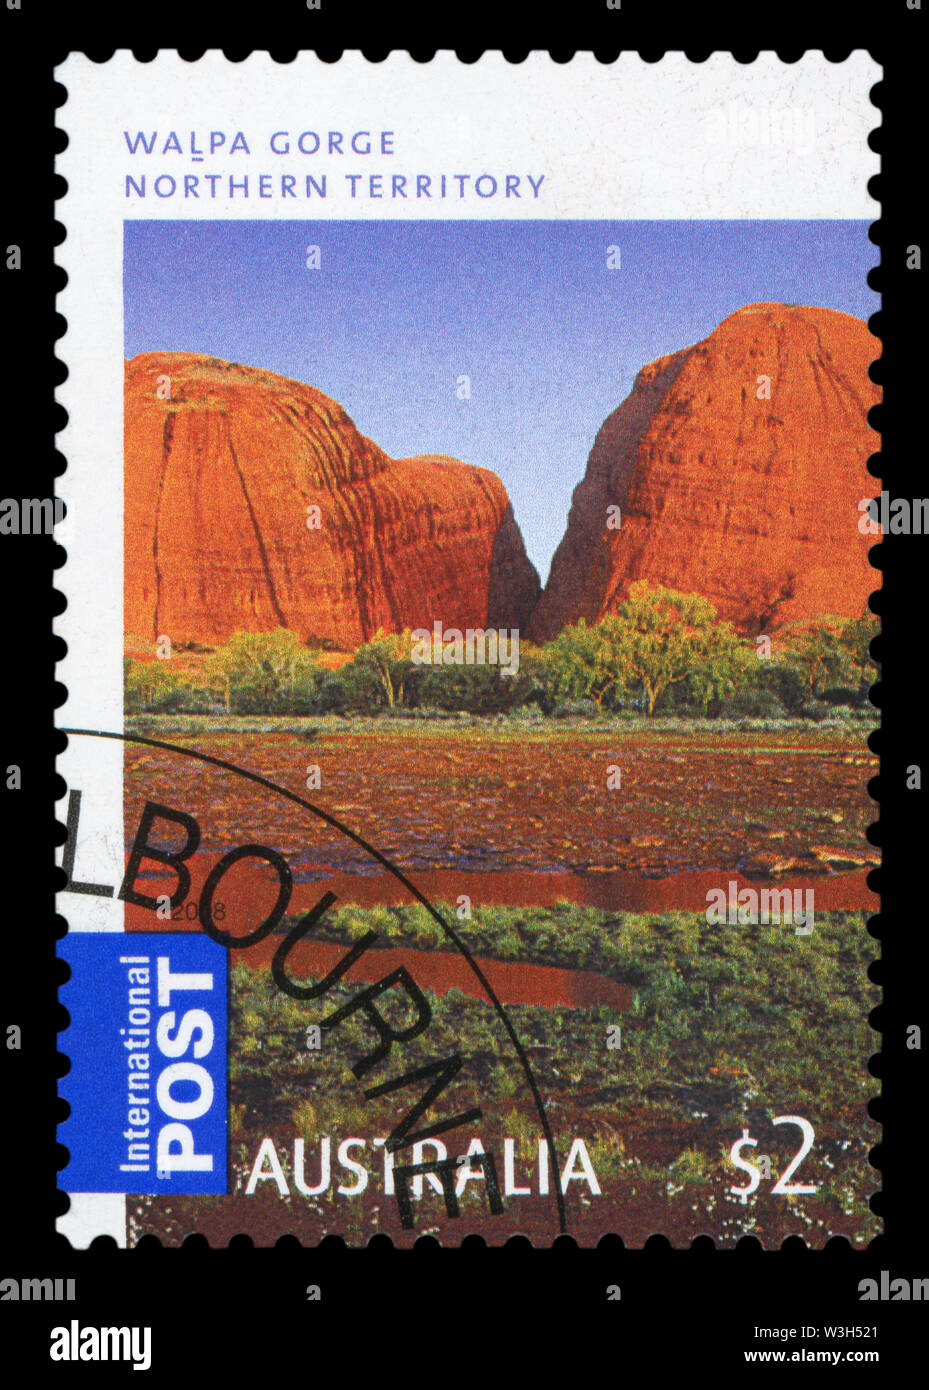 AUSTRALIA - circa 2008: un timbro stampato in australiano del Territorio Settentrionale mostra Walpa Gorge, circa 2008. Foto Stock